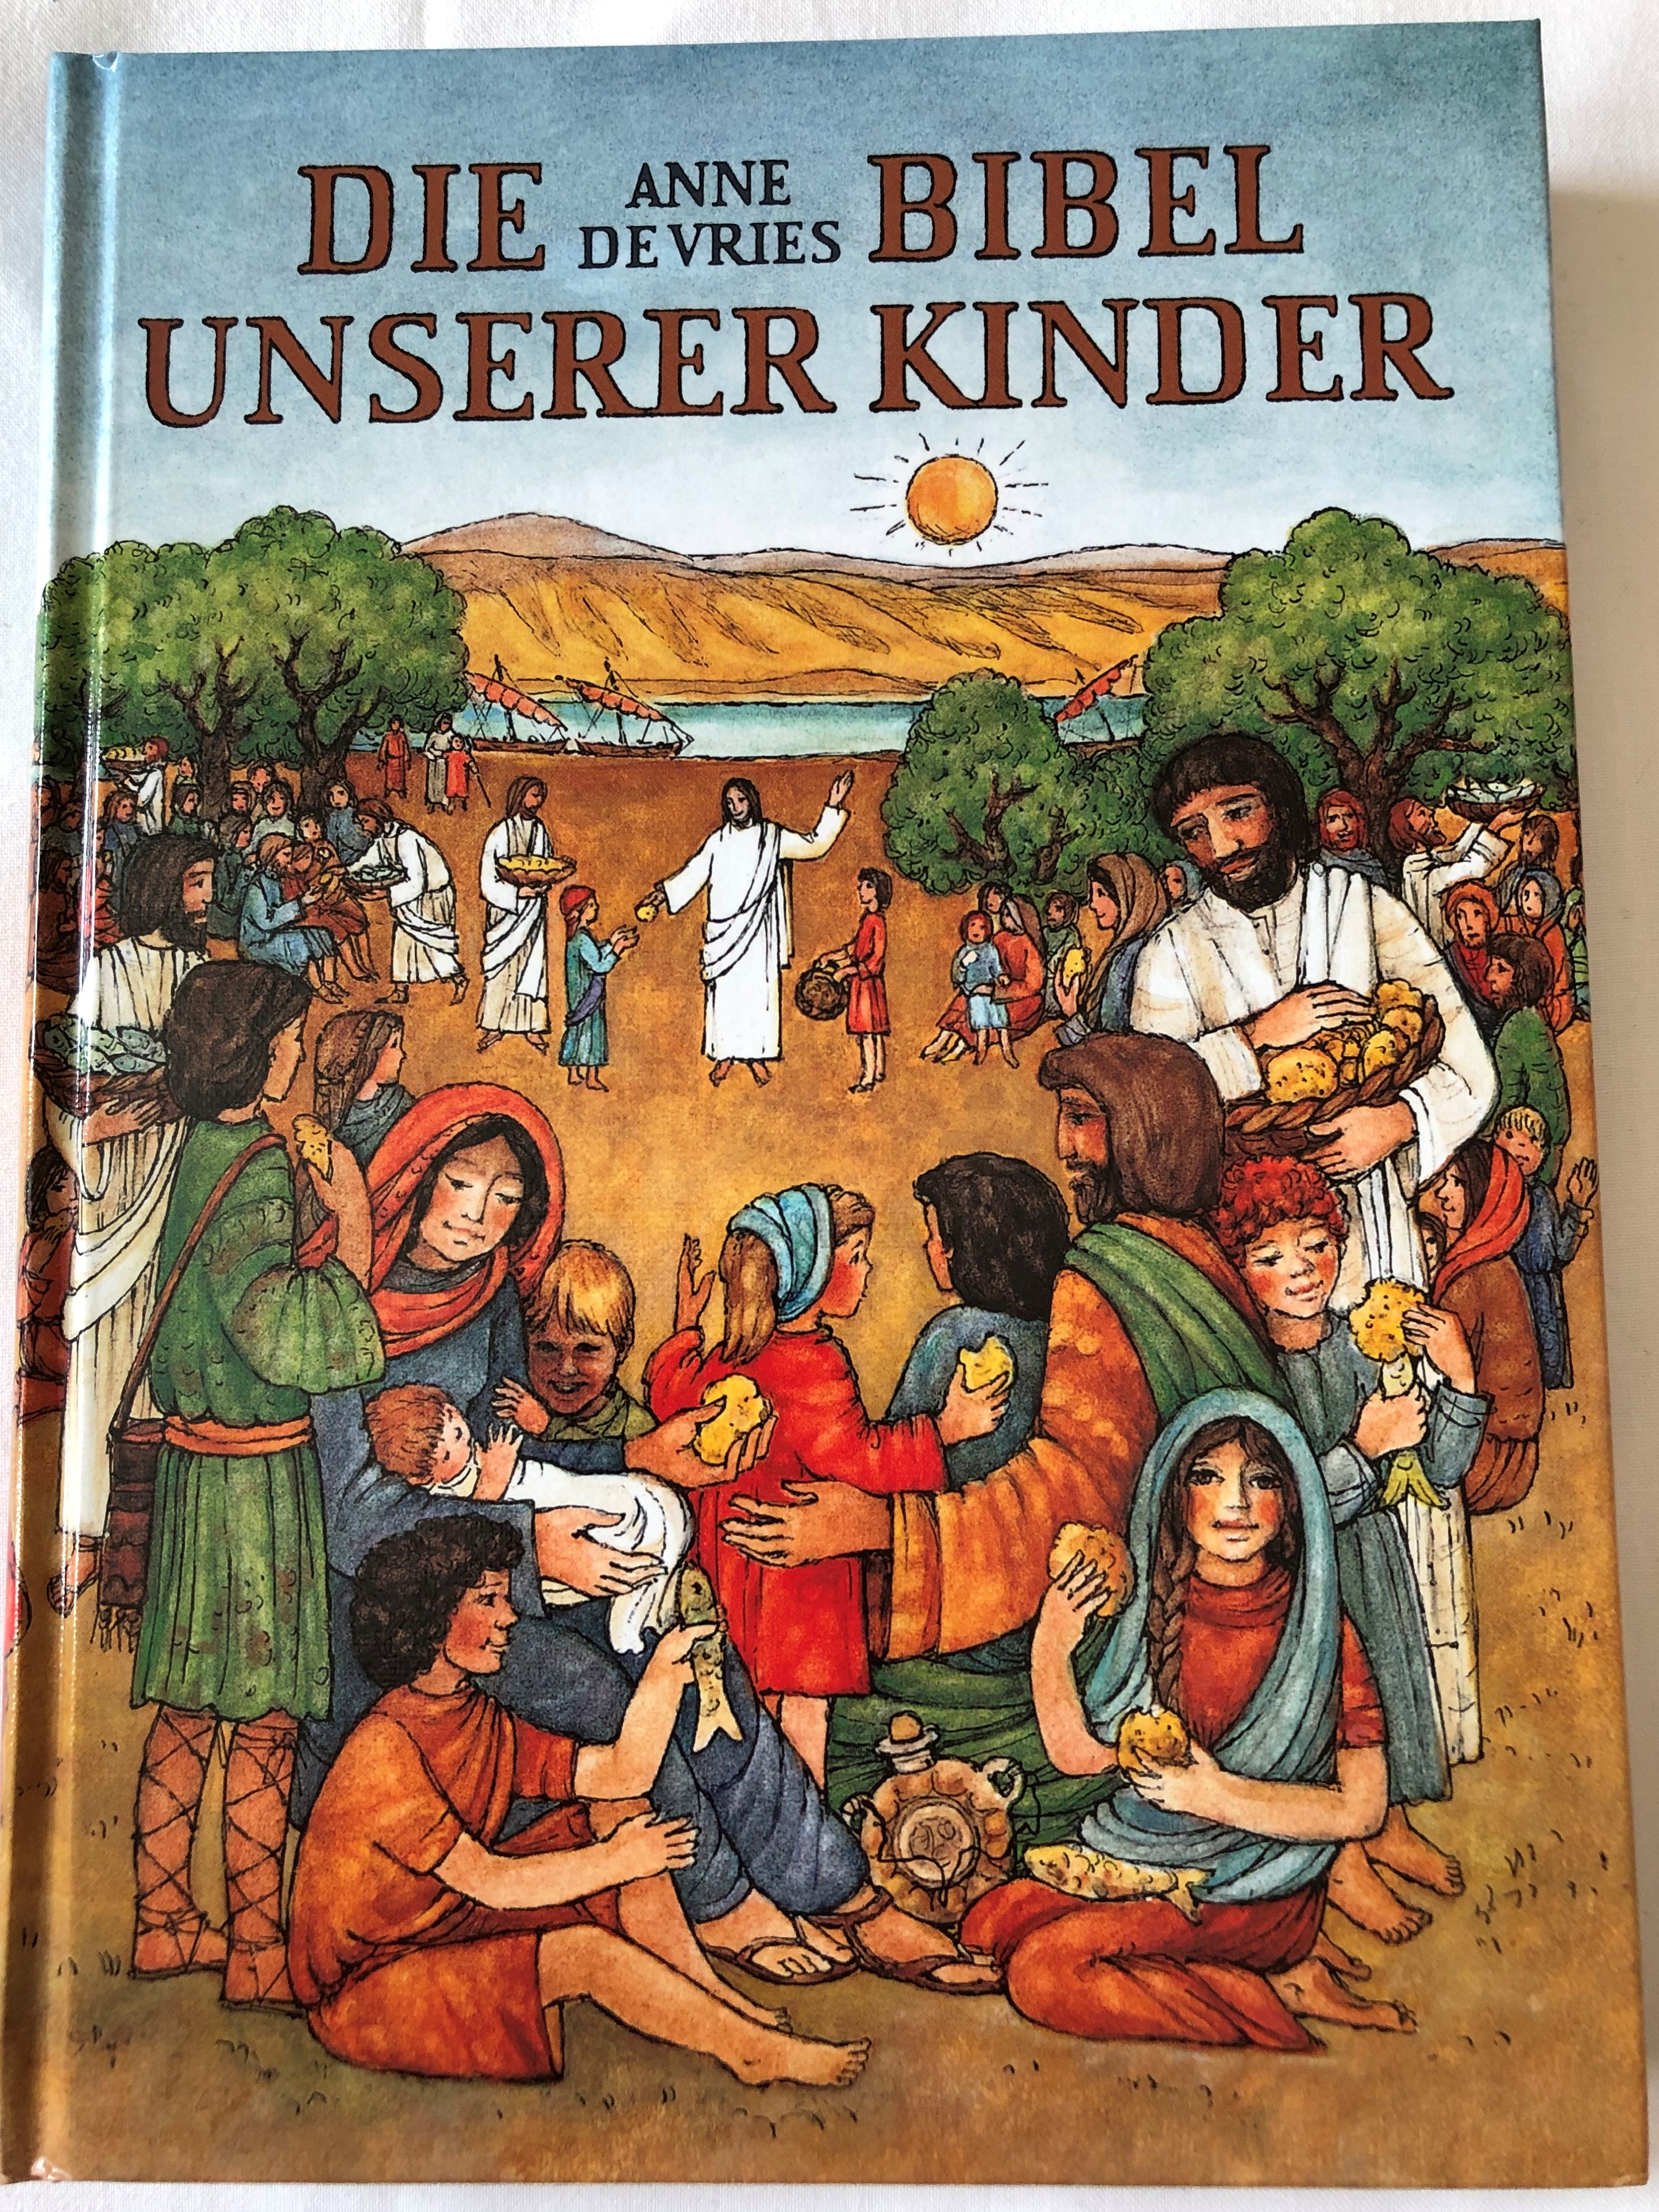 die-bibel-unserer-kinder-by-anne-de-vries-the-bible-of-our-children-german-translation-of-kleutervertelboek-voor-de-bijbelse-geschiedenis-hardcover-kbw-1-.jpg